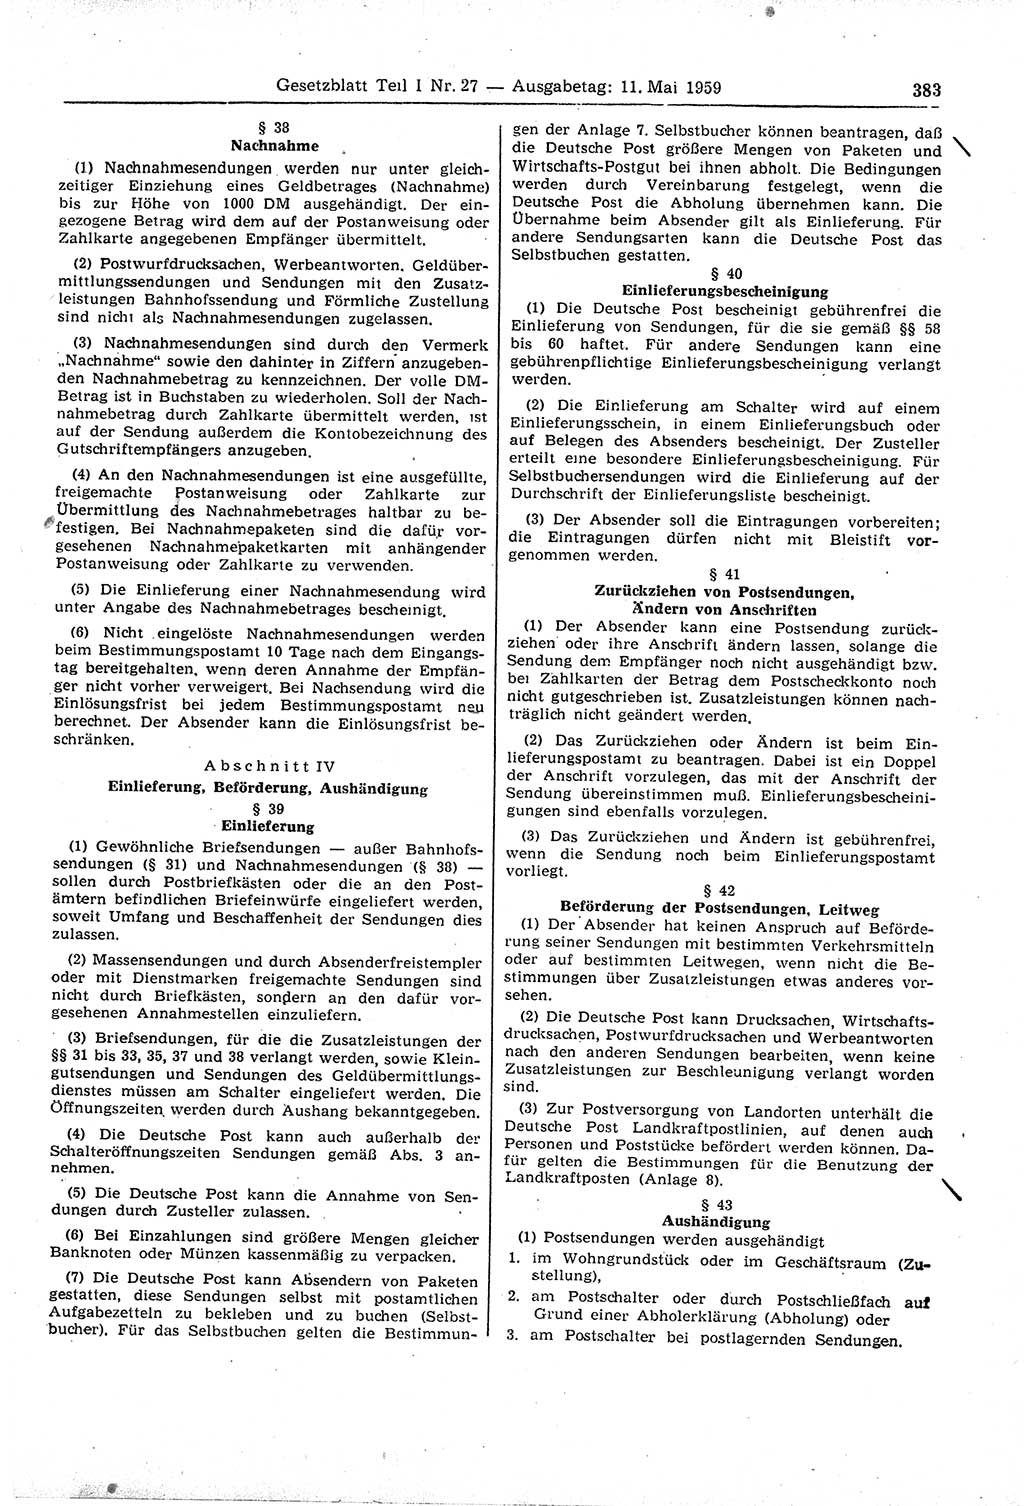 Gesetzblatt (GBl.) der Deutschen Demokratischen Republik (DDR) Teil Ⅰ 1959, Seite 383 (GBl. DDR Ⅰ 1959, S. 383)